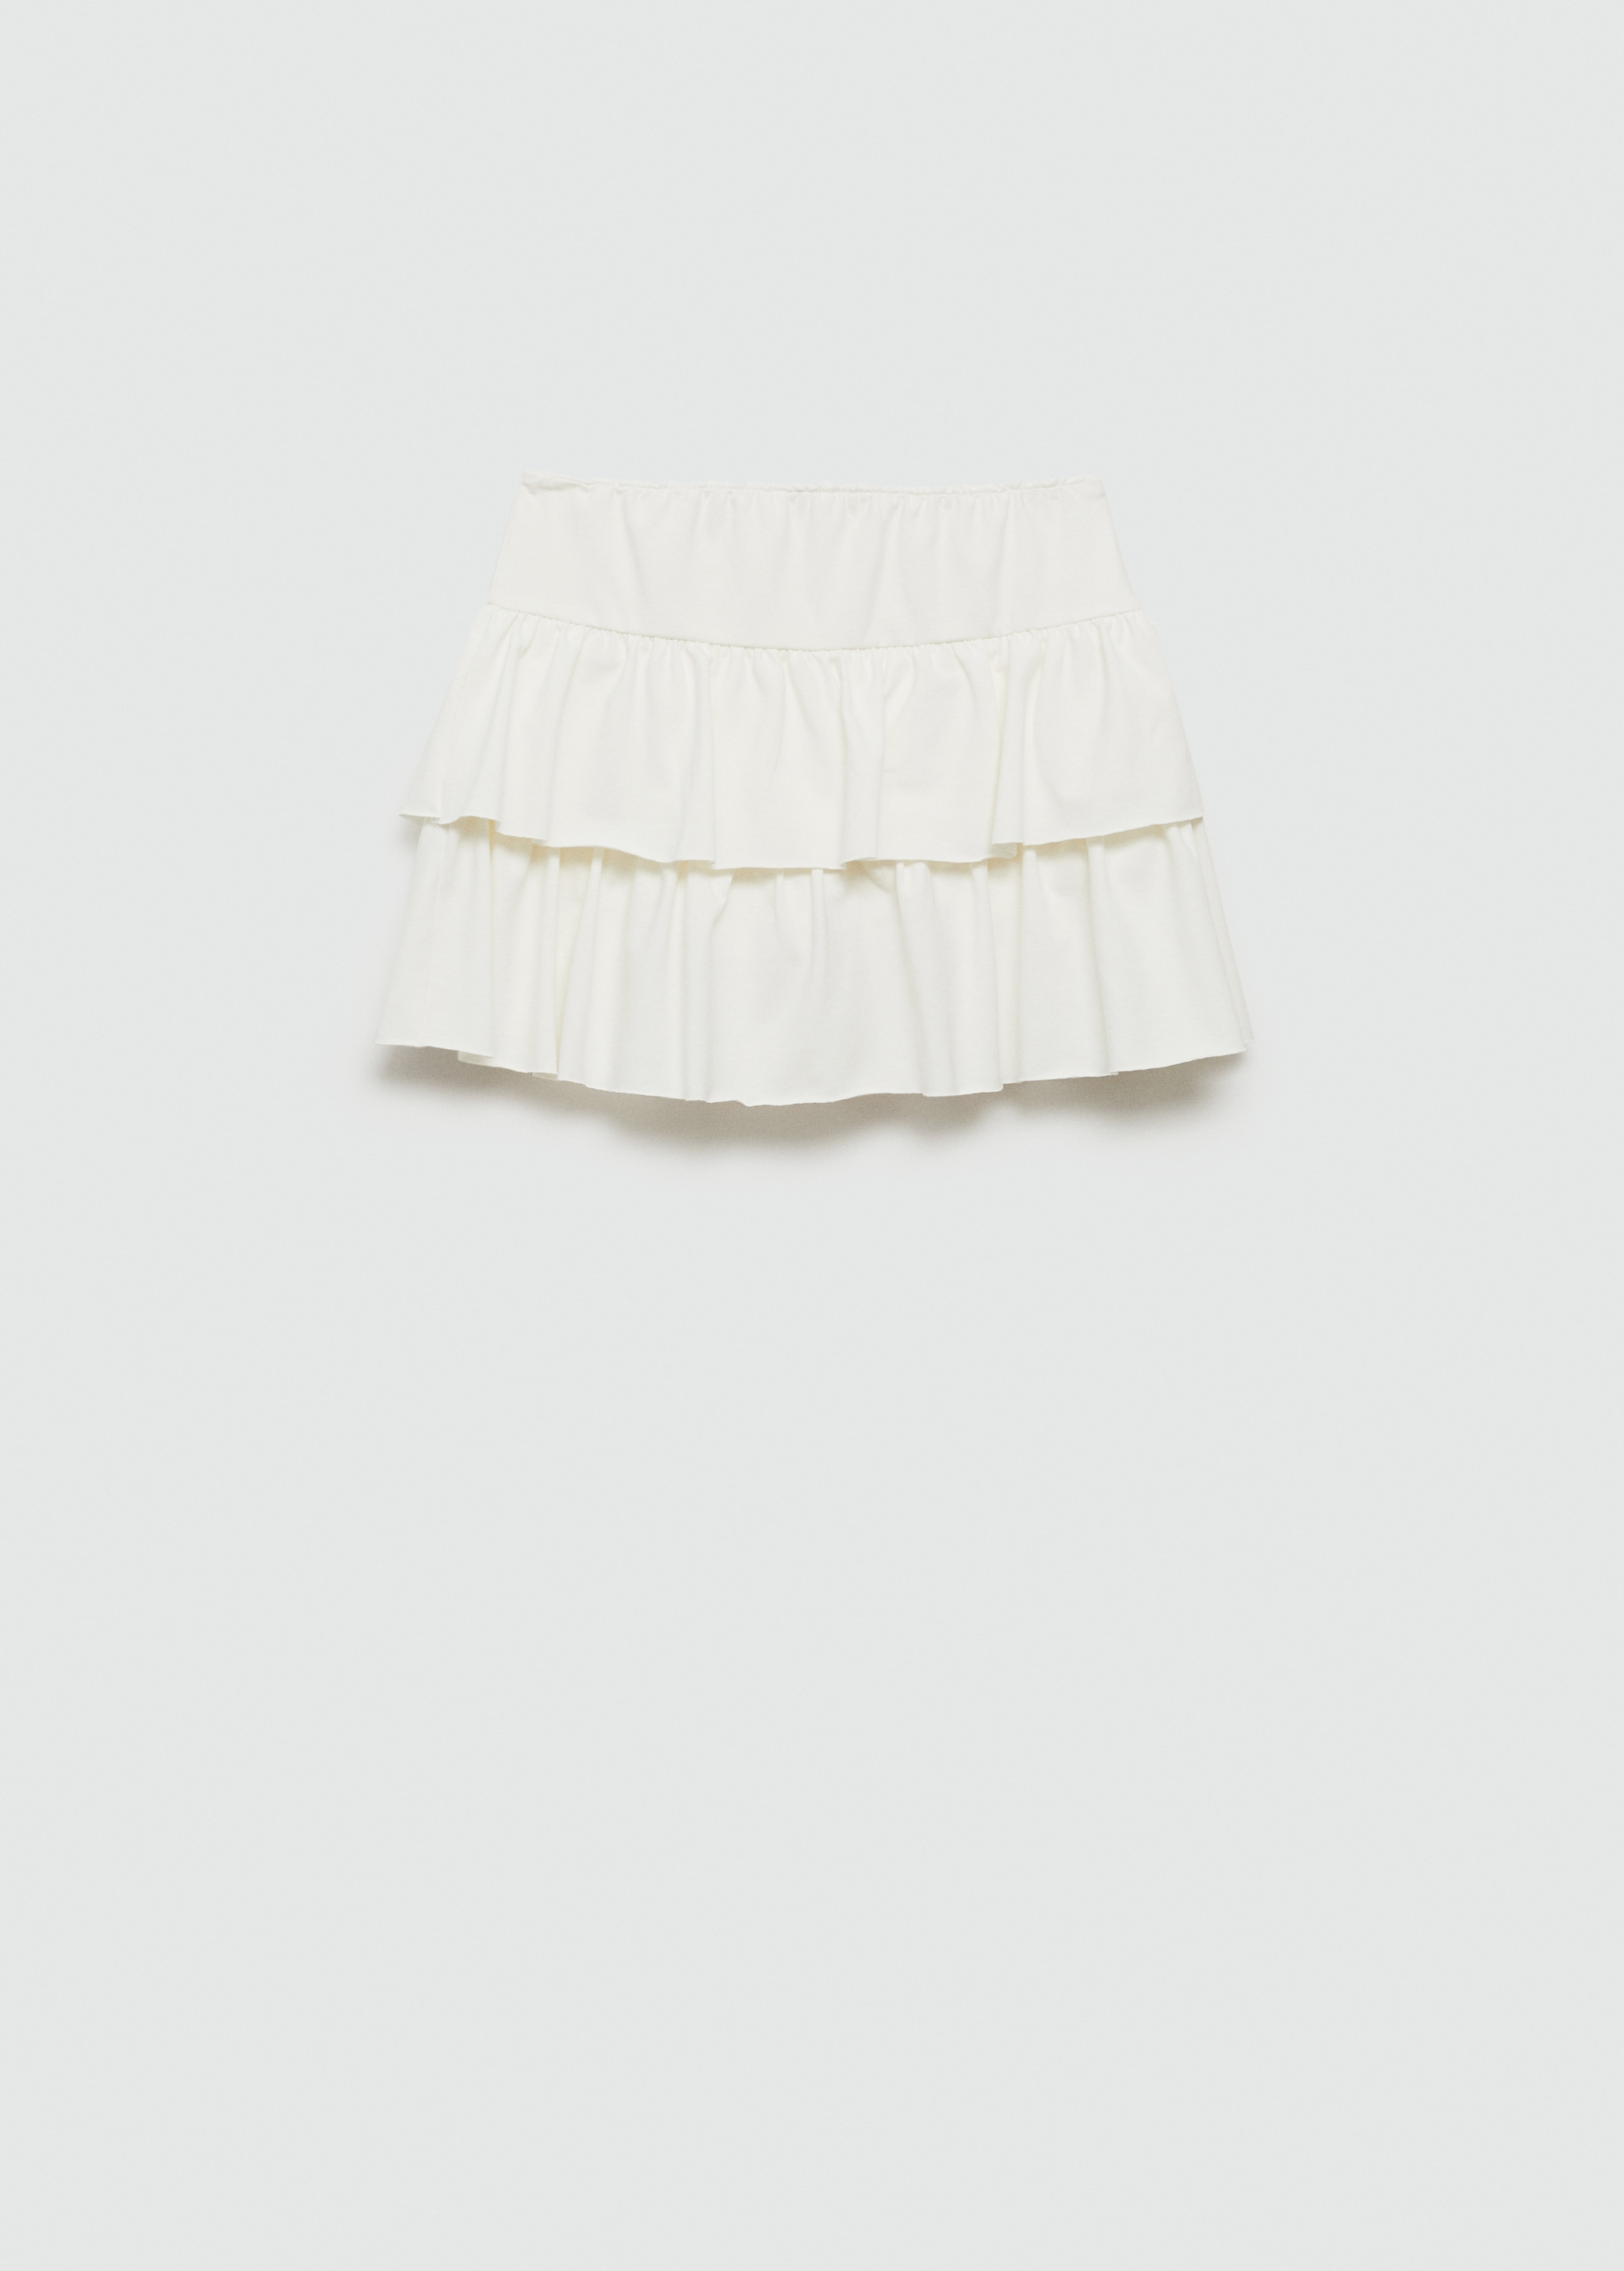 Ruffled trouser skirt - Reverse of the article